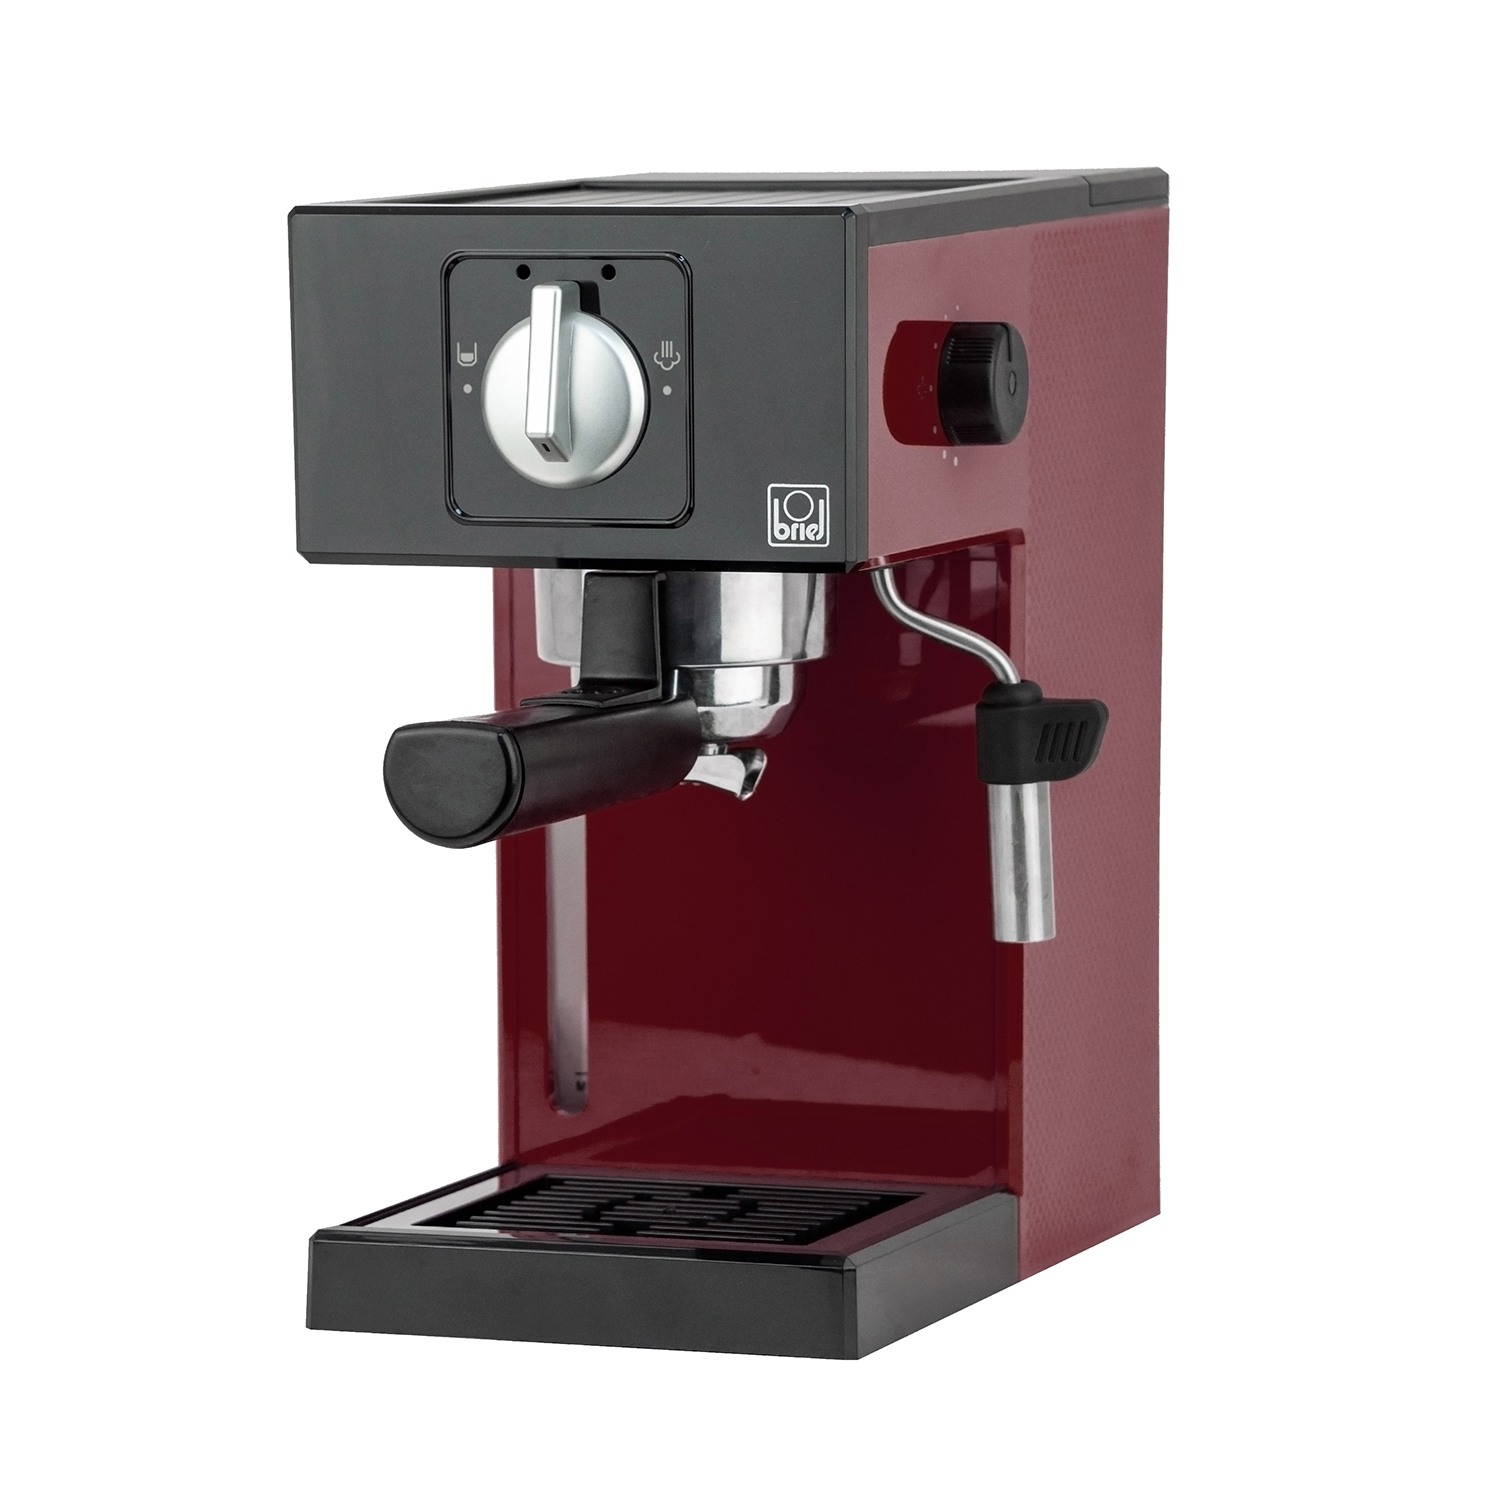 Maquina-cafe-espresso-A1-MANUAL-WINE-2.jpg